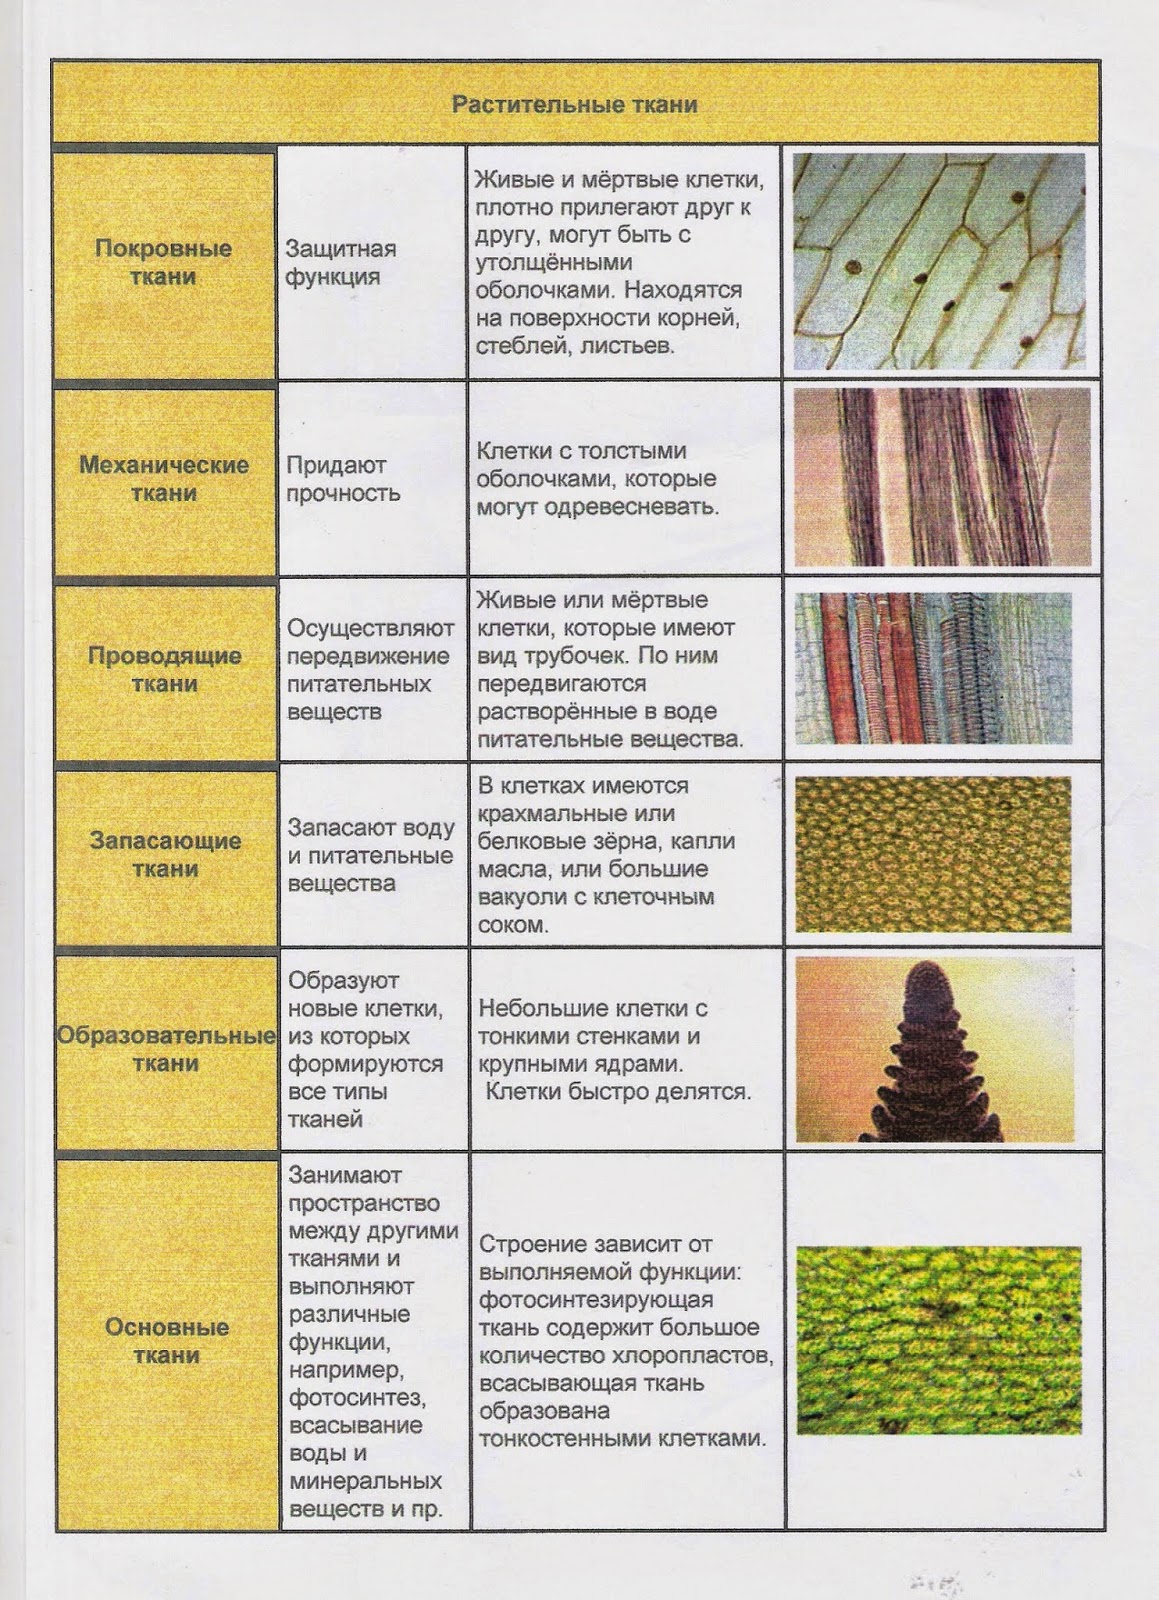 У каких растений появились ткани. Таблица растительные ткани 6 класс биология. Типы тканей растений 6 класс биология таблица. Виды тканей растений таблица биология 6 класс. Виды тканей растений 5 класс биология таблица.